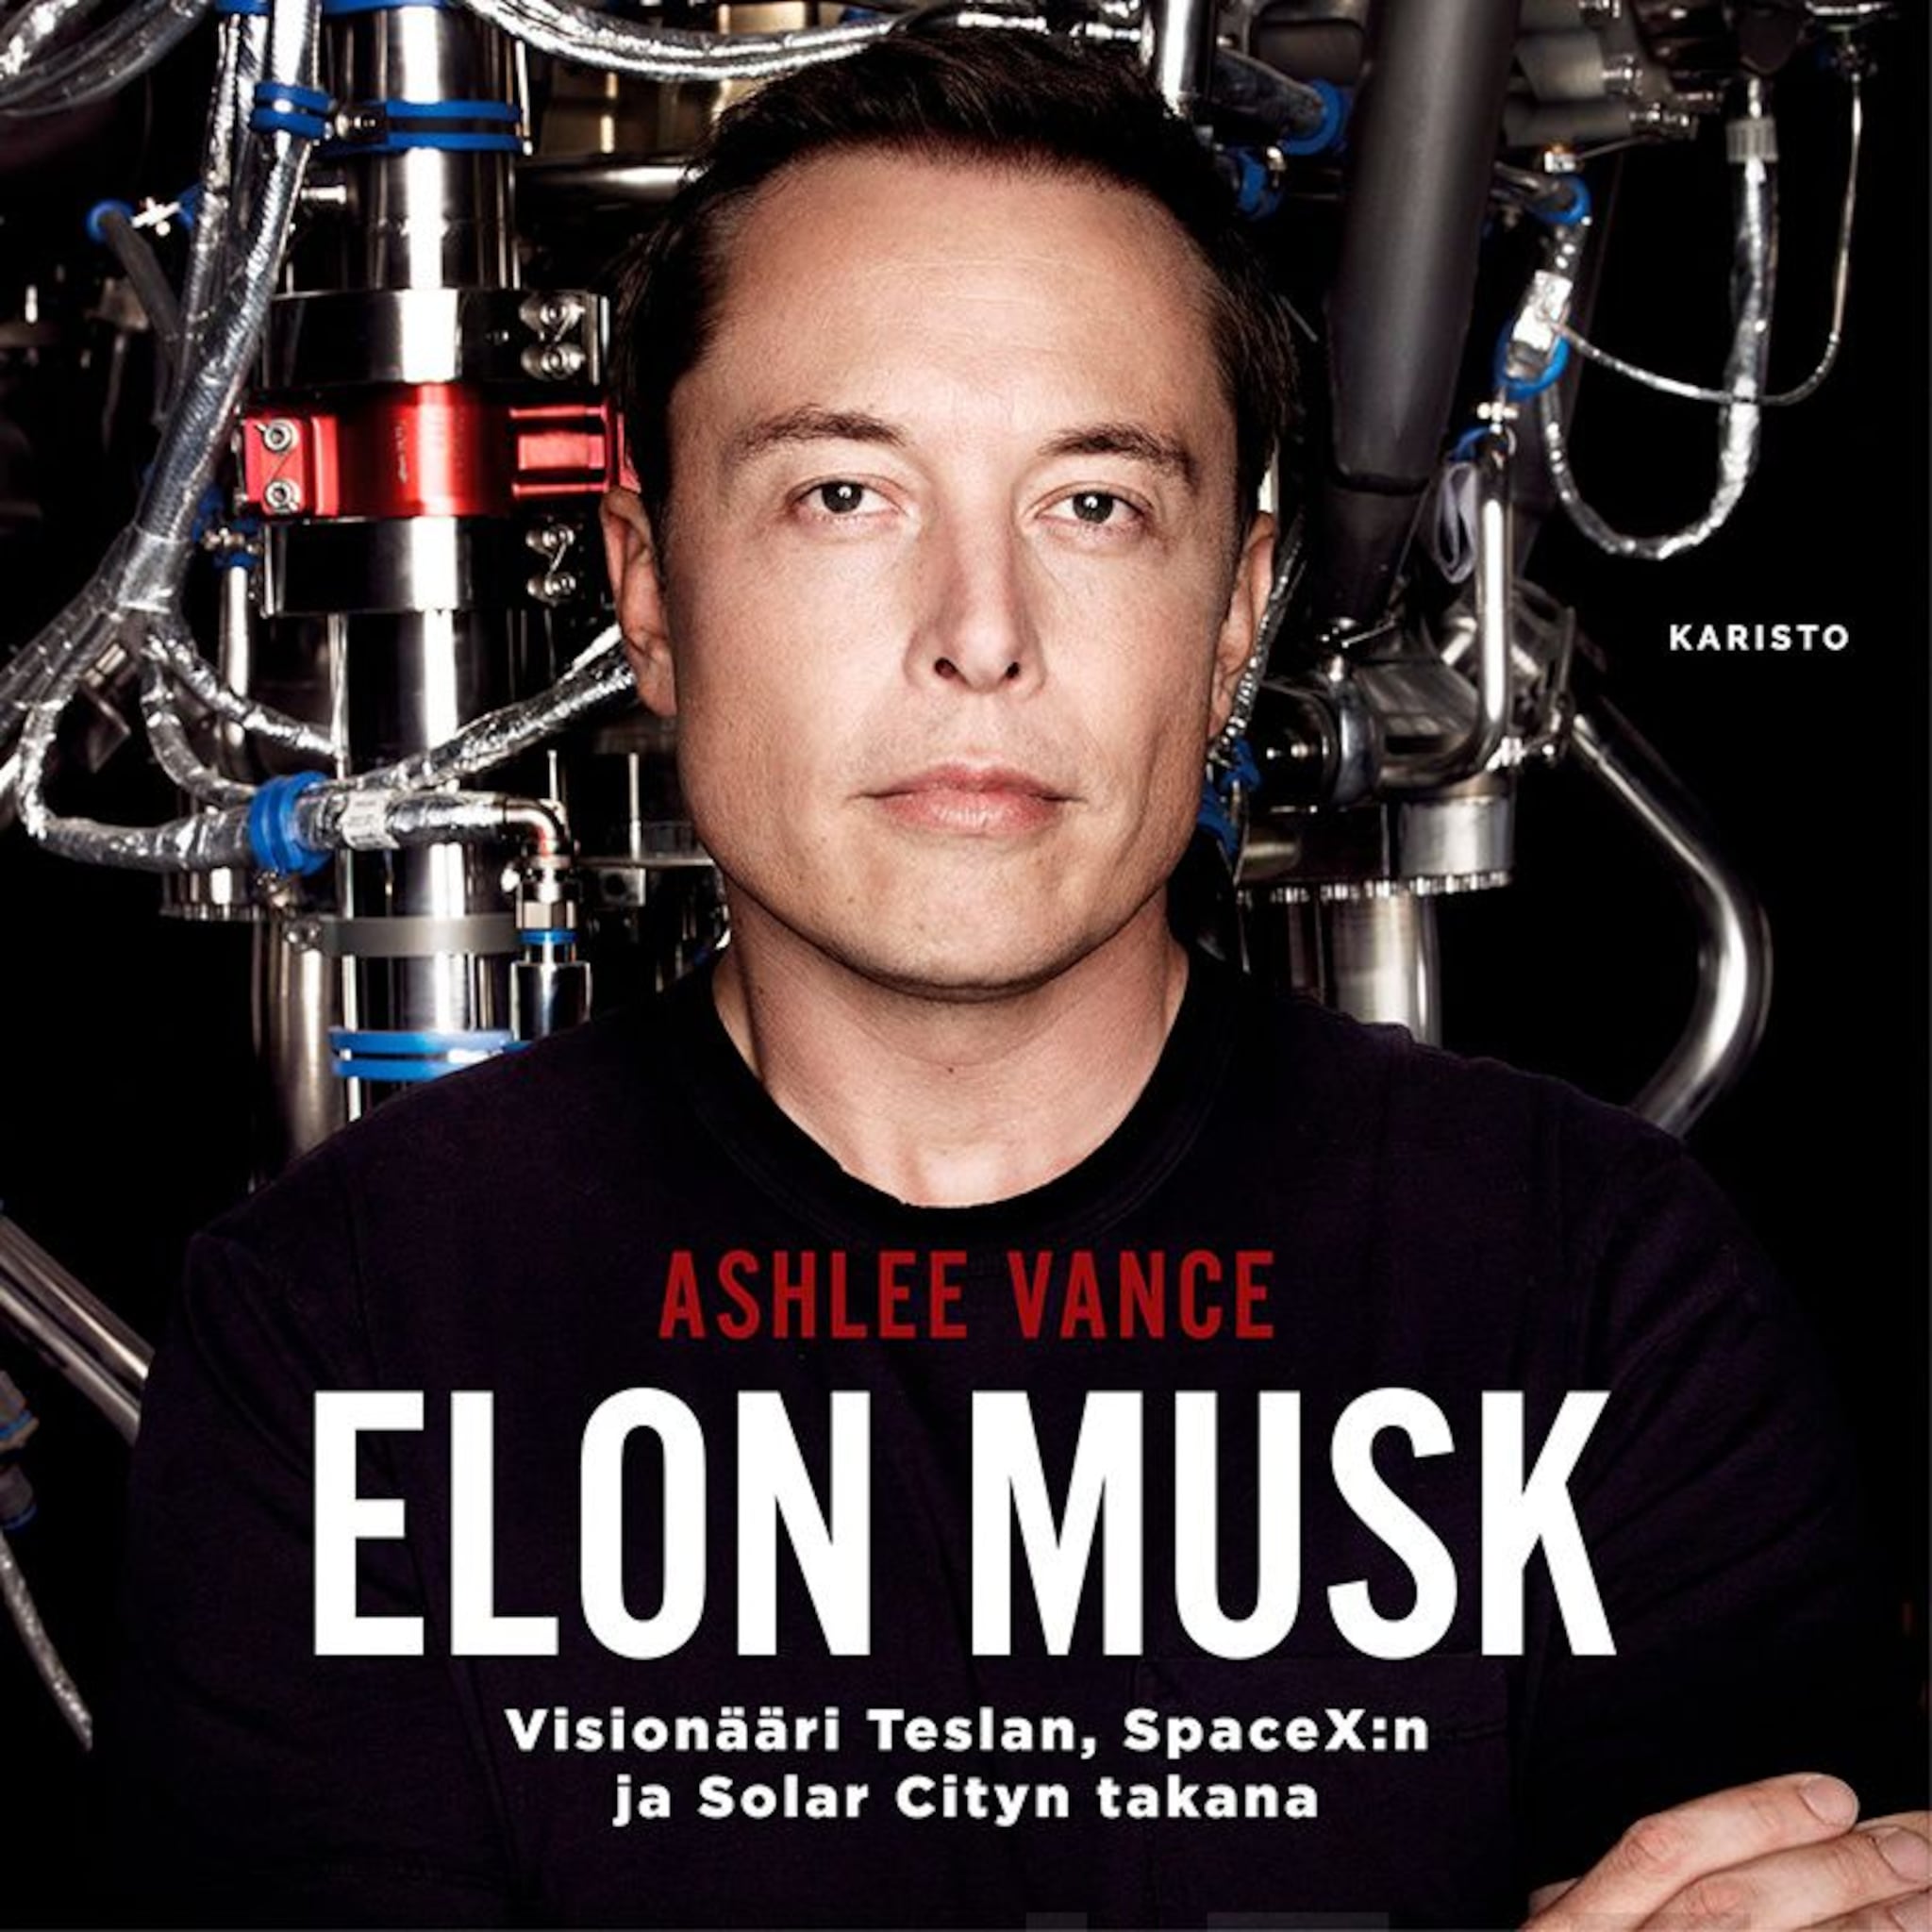 Elon Musk – Visionääri Teslan, SpaceX:n ja Solar Cityn takana ilmaiseksi